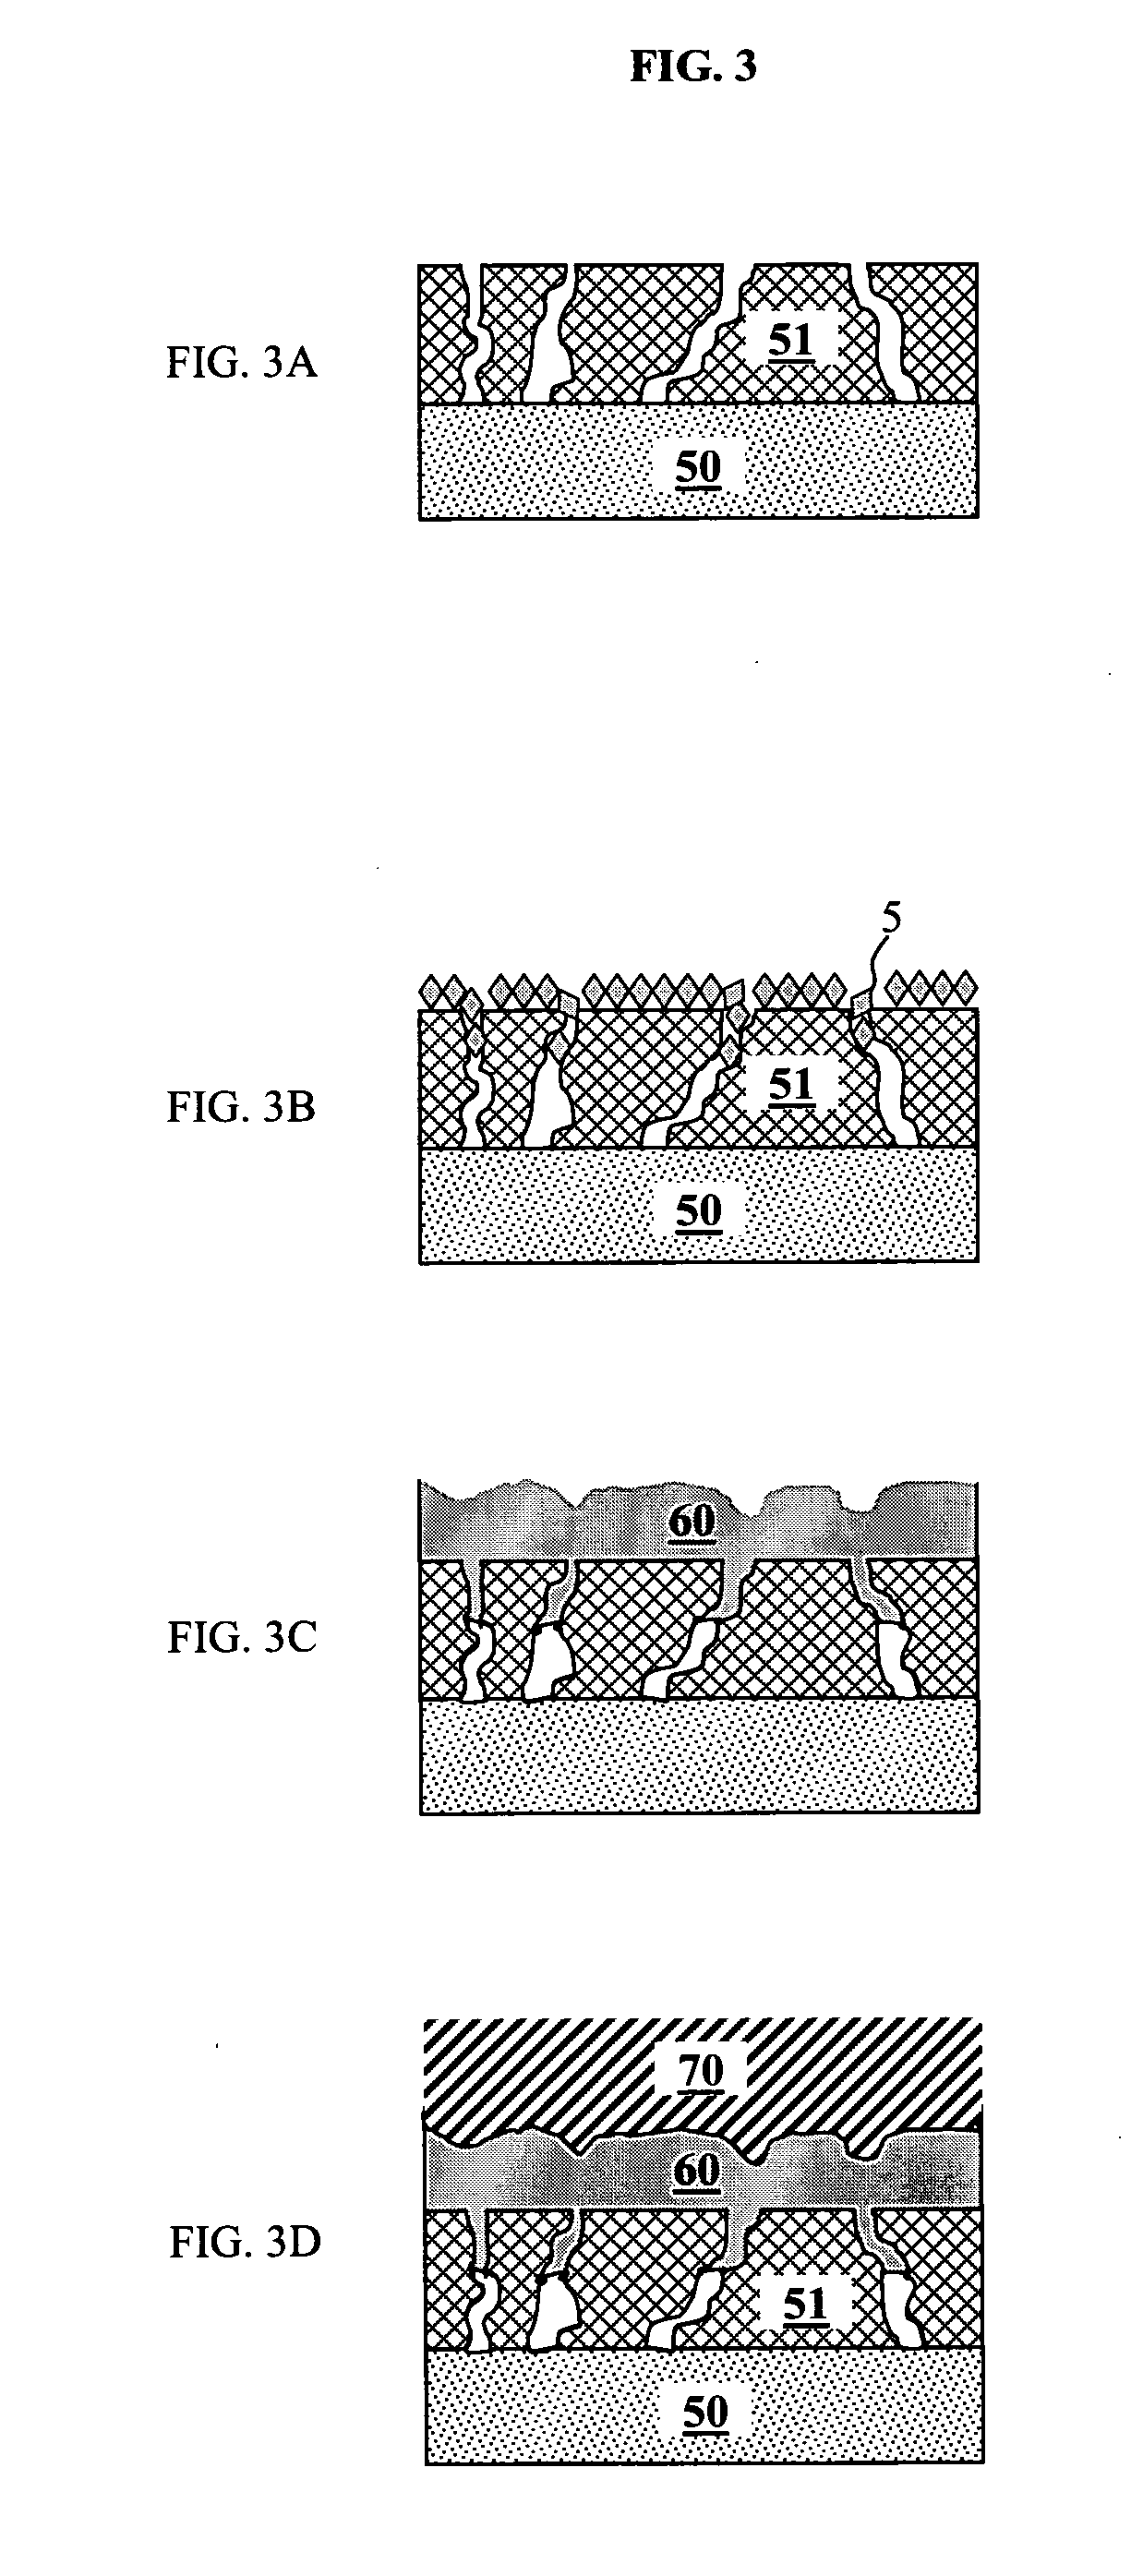 Multilayer barrier film